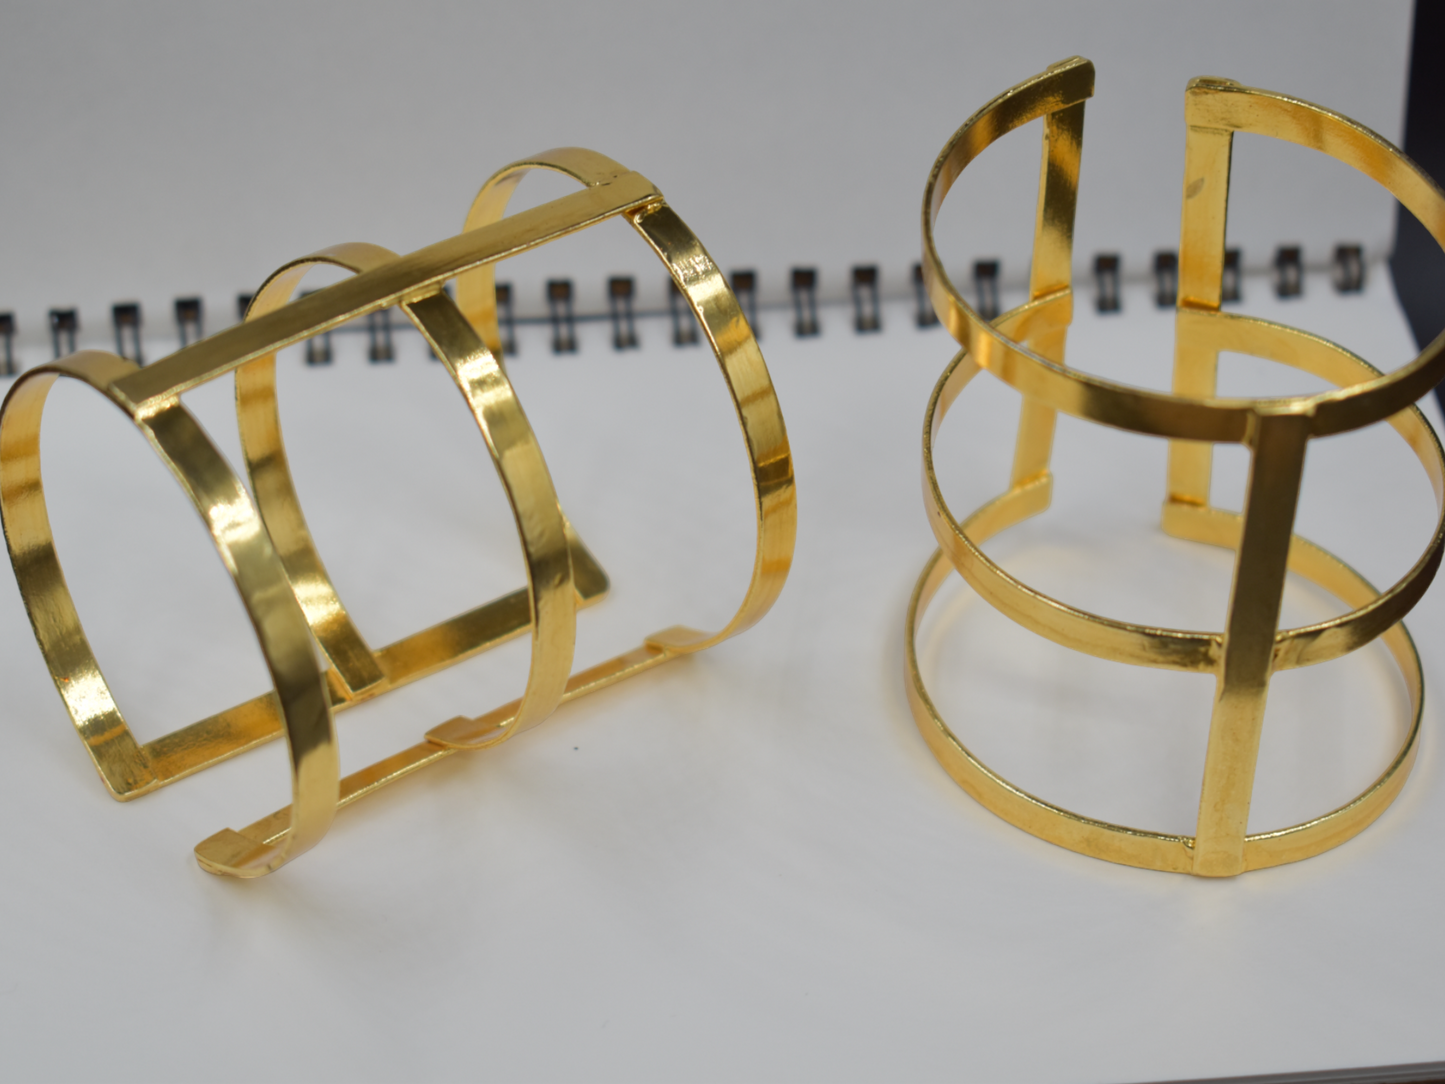 Goldplated brass golden adjustable bangle